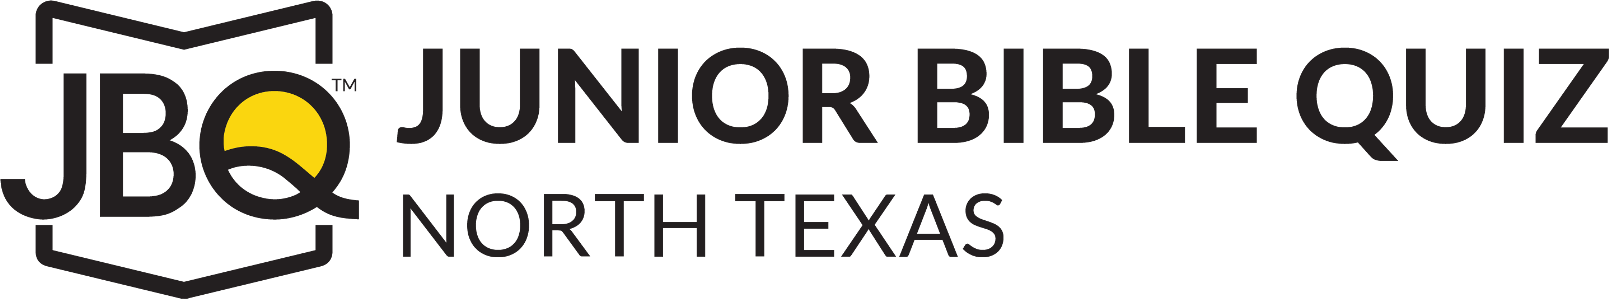 North Texas Junior Bible Quiz logo